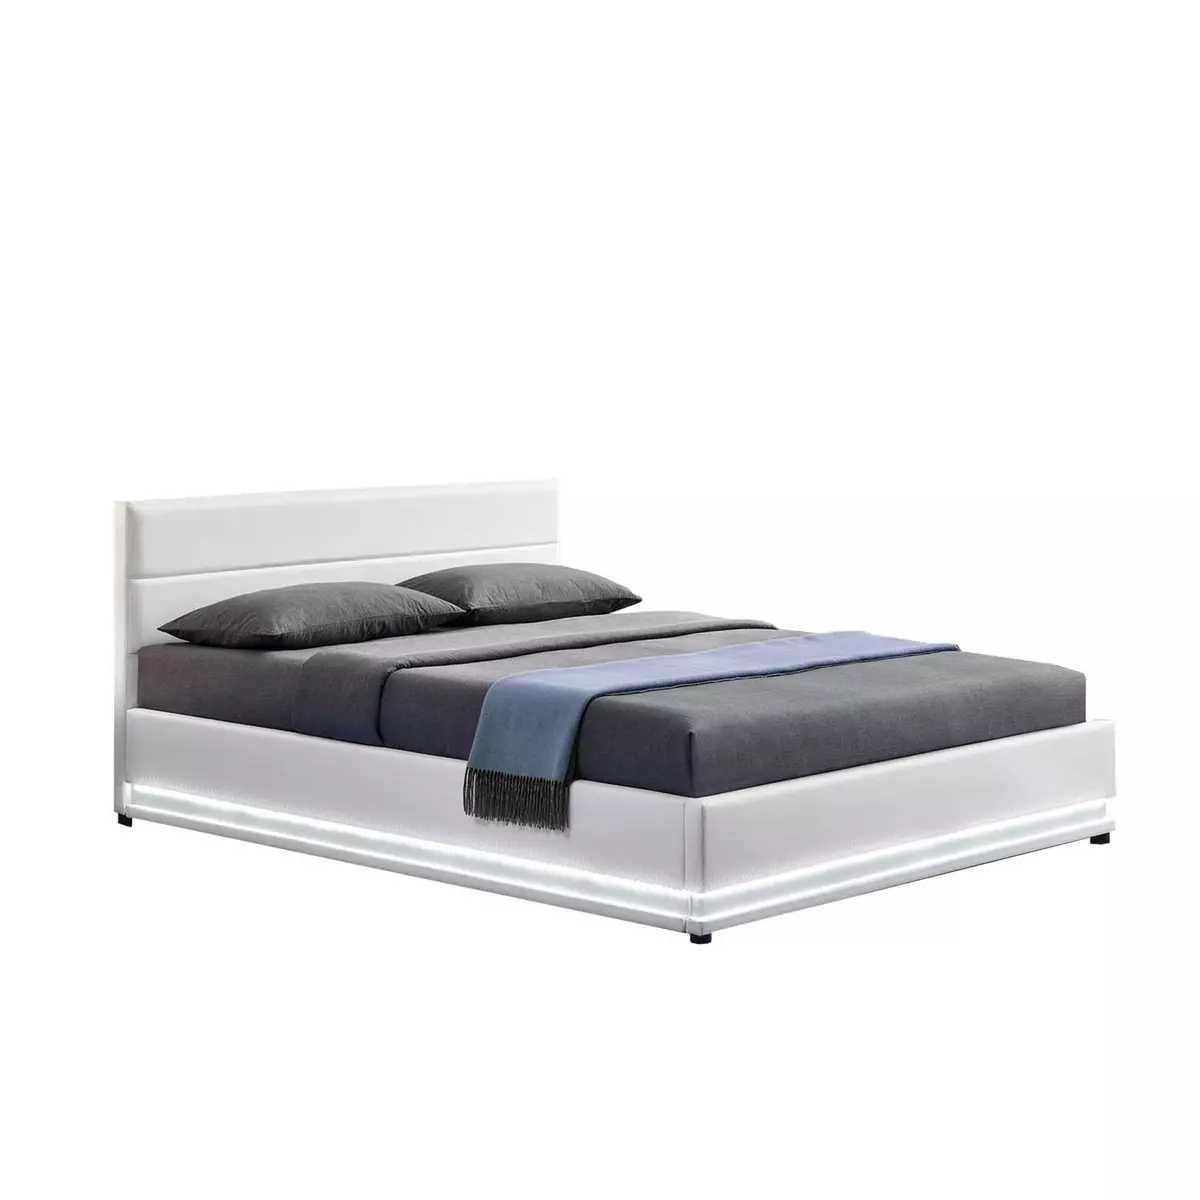 CONCEPT USINE Cadre de lit en PU blanc avec rangements et LED intégrées 160x200 cm NEW YORK